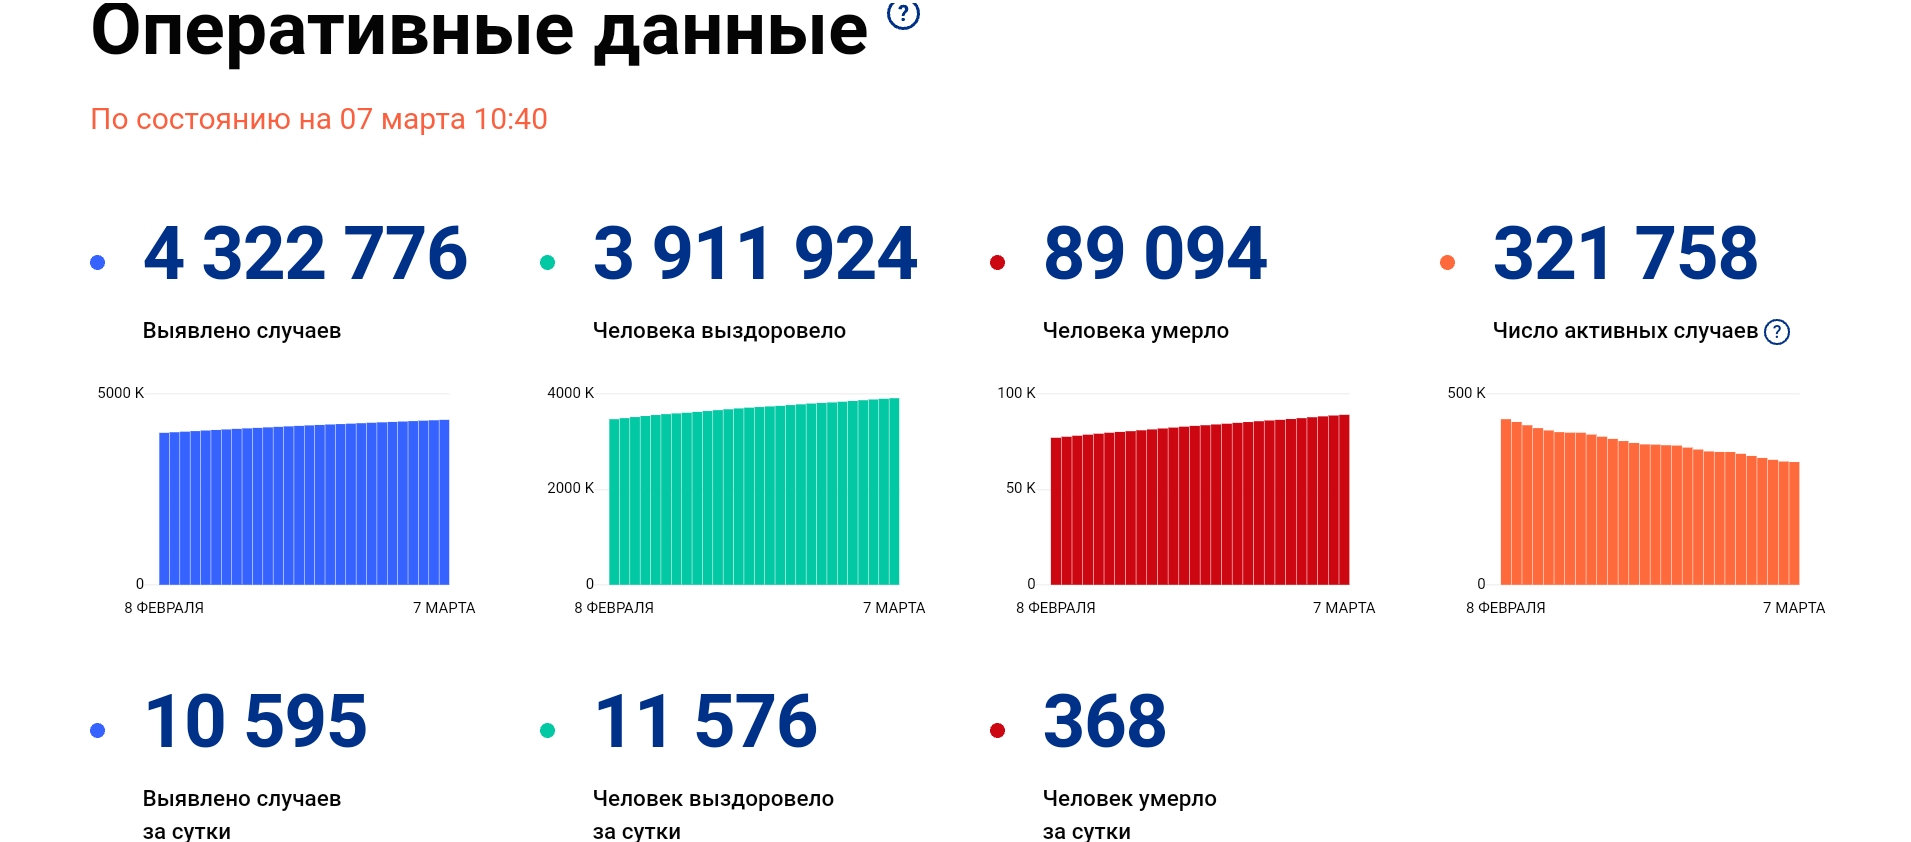 [COVID-19: 9-я неделя 2021] В Москве число заразившихся за неделю впервые с января выросло по сравнению с 7-ю днями ранее. В стране число новых случаев продолжает сокращаться, но медленнее, чем ранее